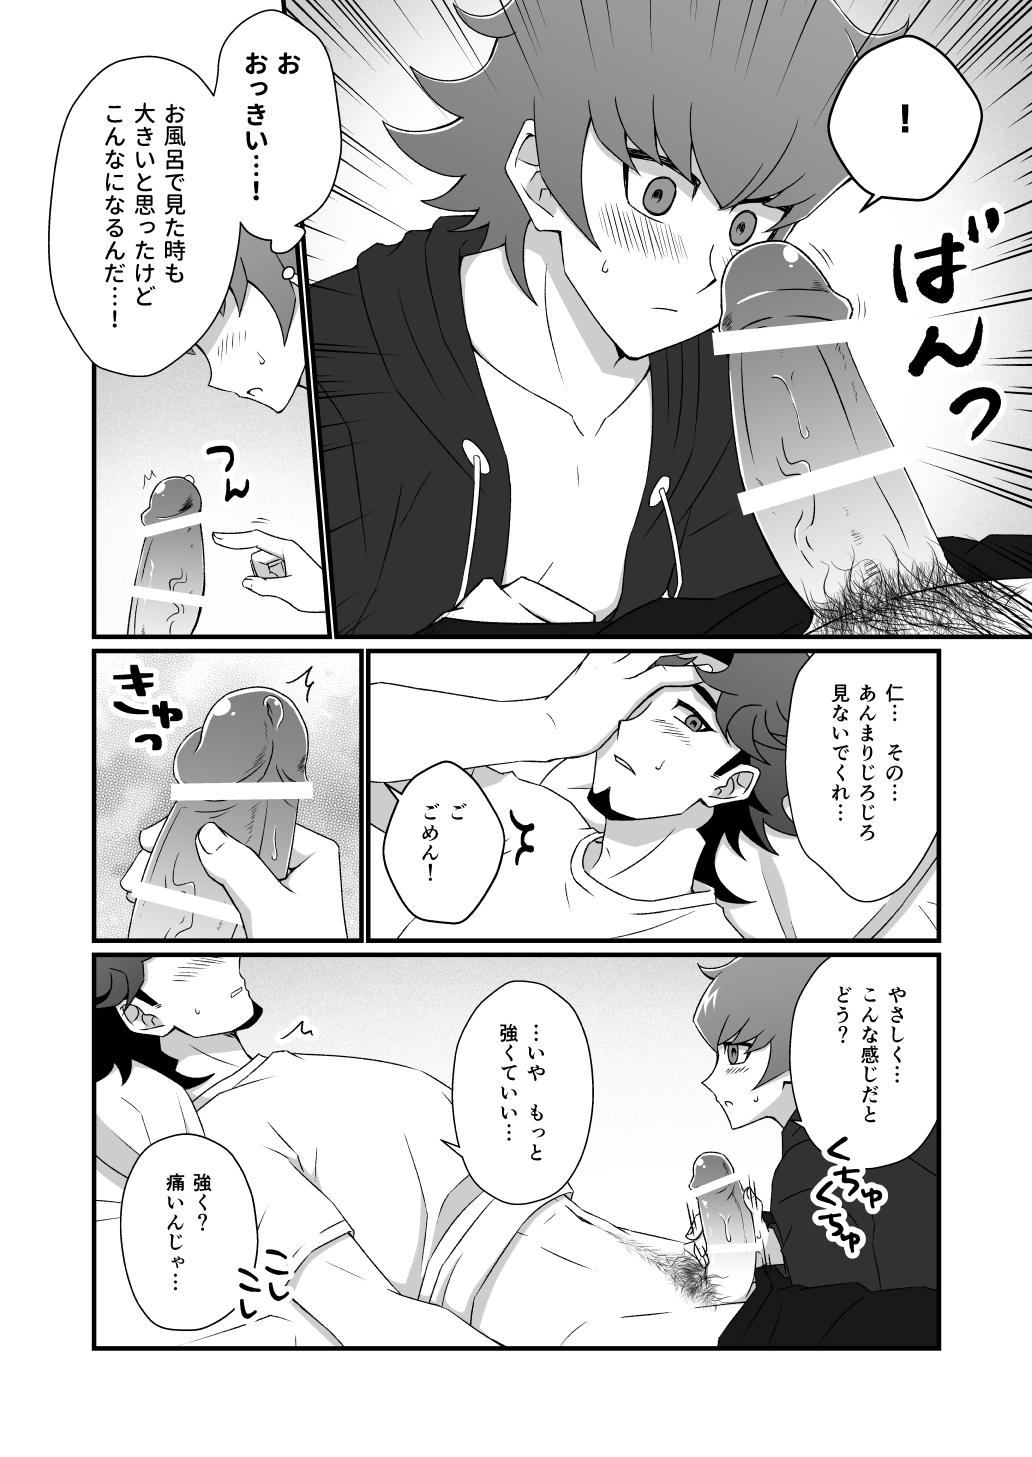 4some Mayonakaressun fukushu-hen - Yu gi oh vrains Gay Shop - Page 9